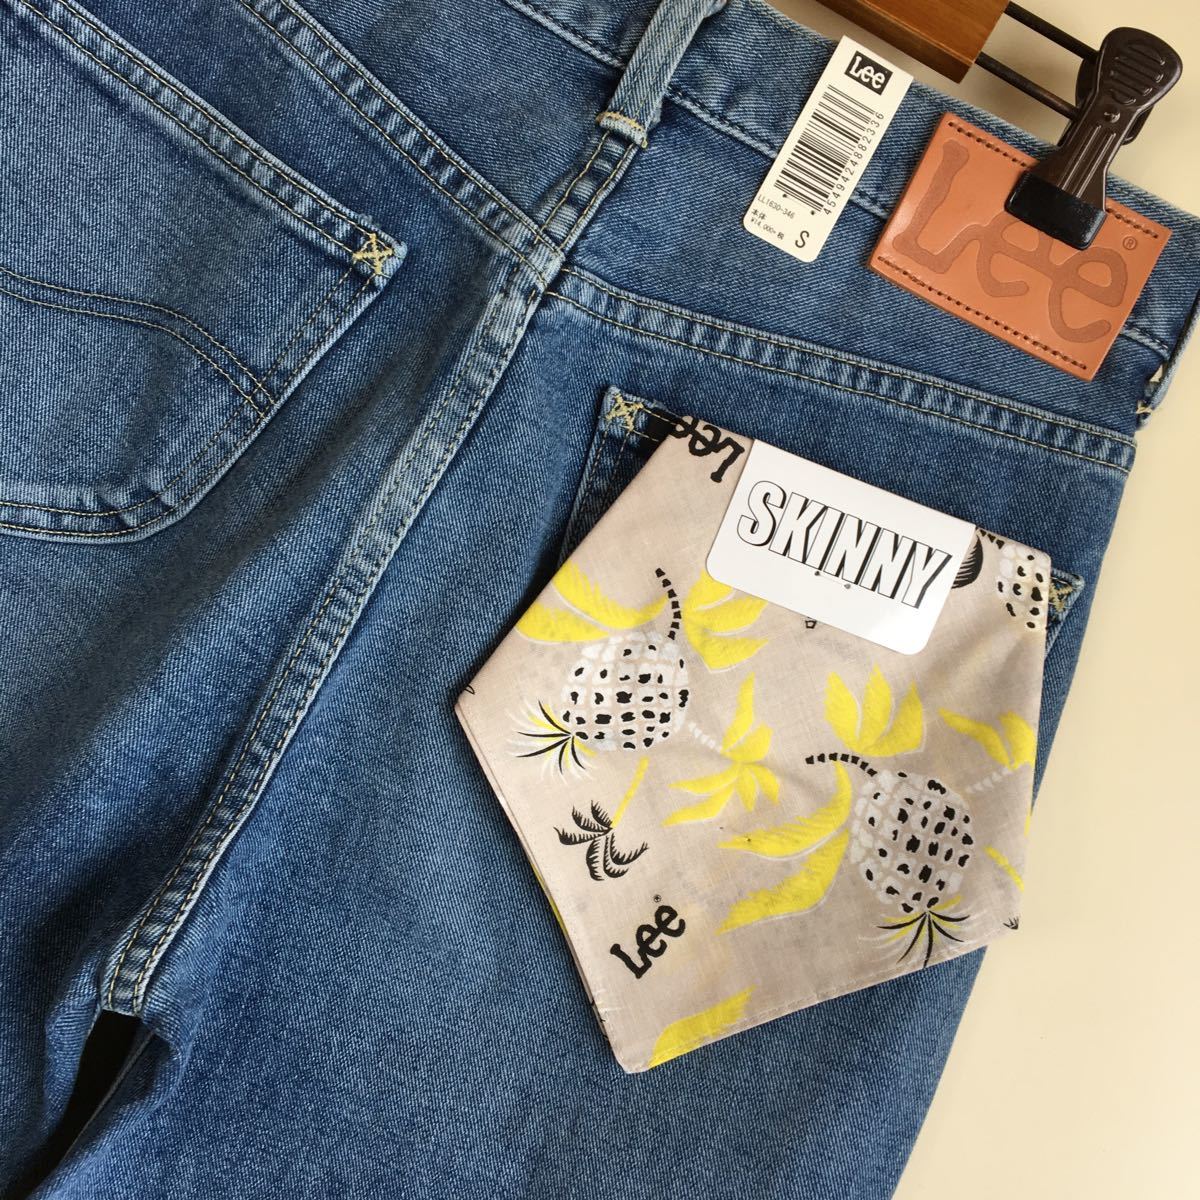  новый товар *Lee Lee * органический хлопок обтягивающие джинсы брюки обычная цена 15,400 иен 